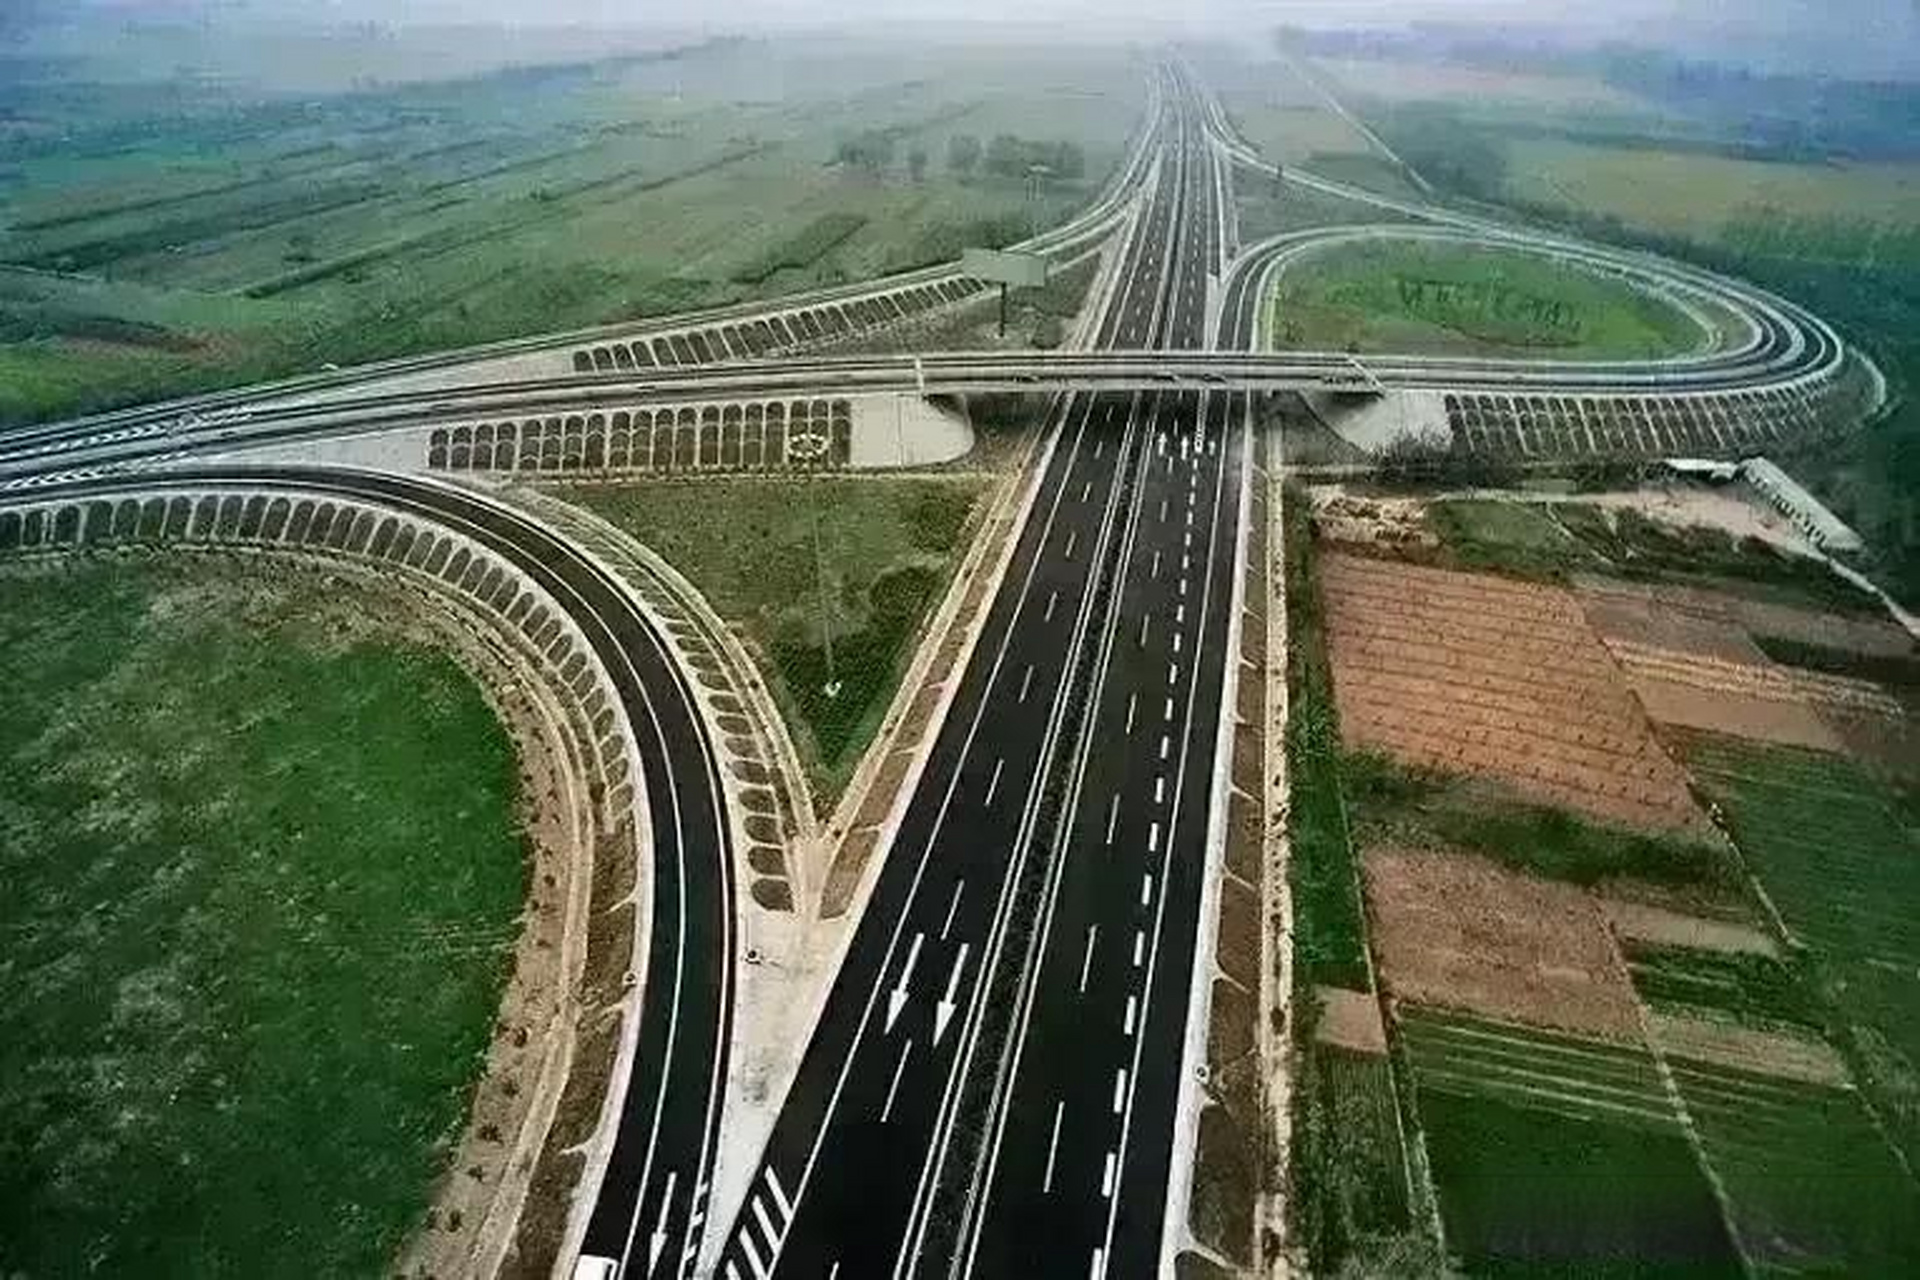 保沧高速保定市区段:有望作为城市快速路管理?